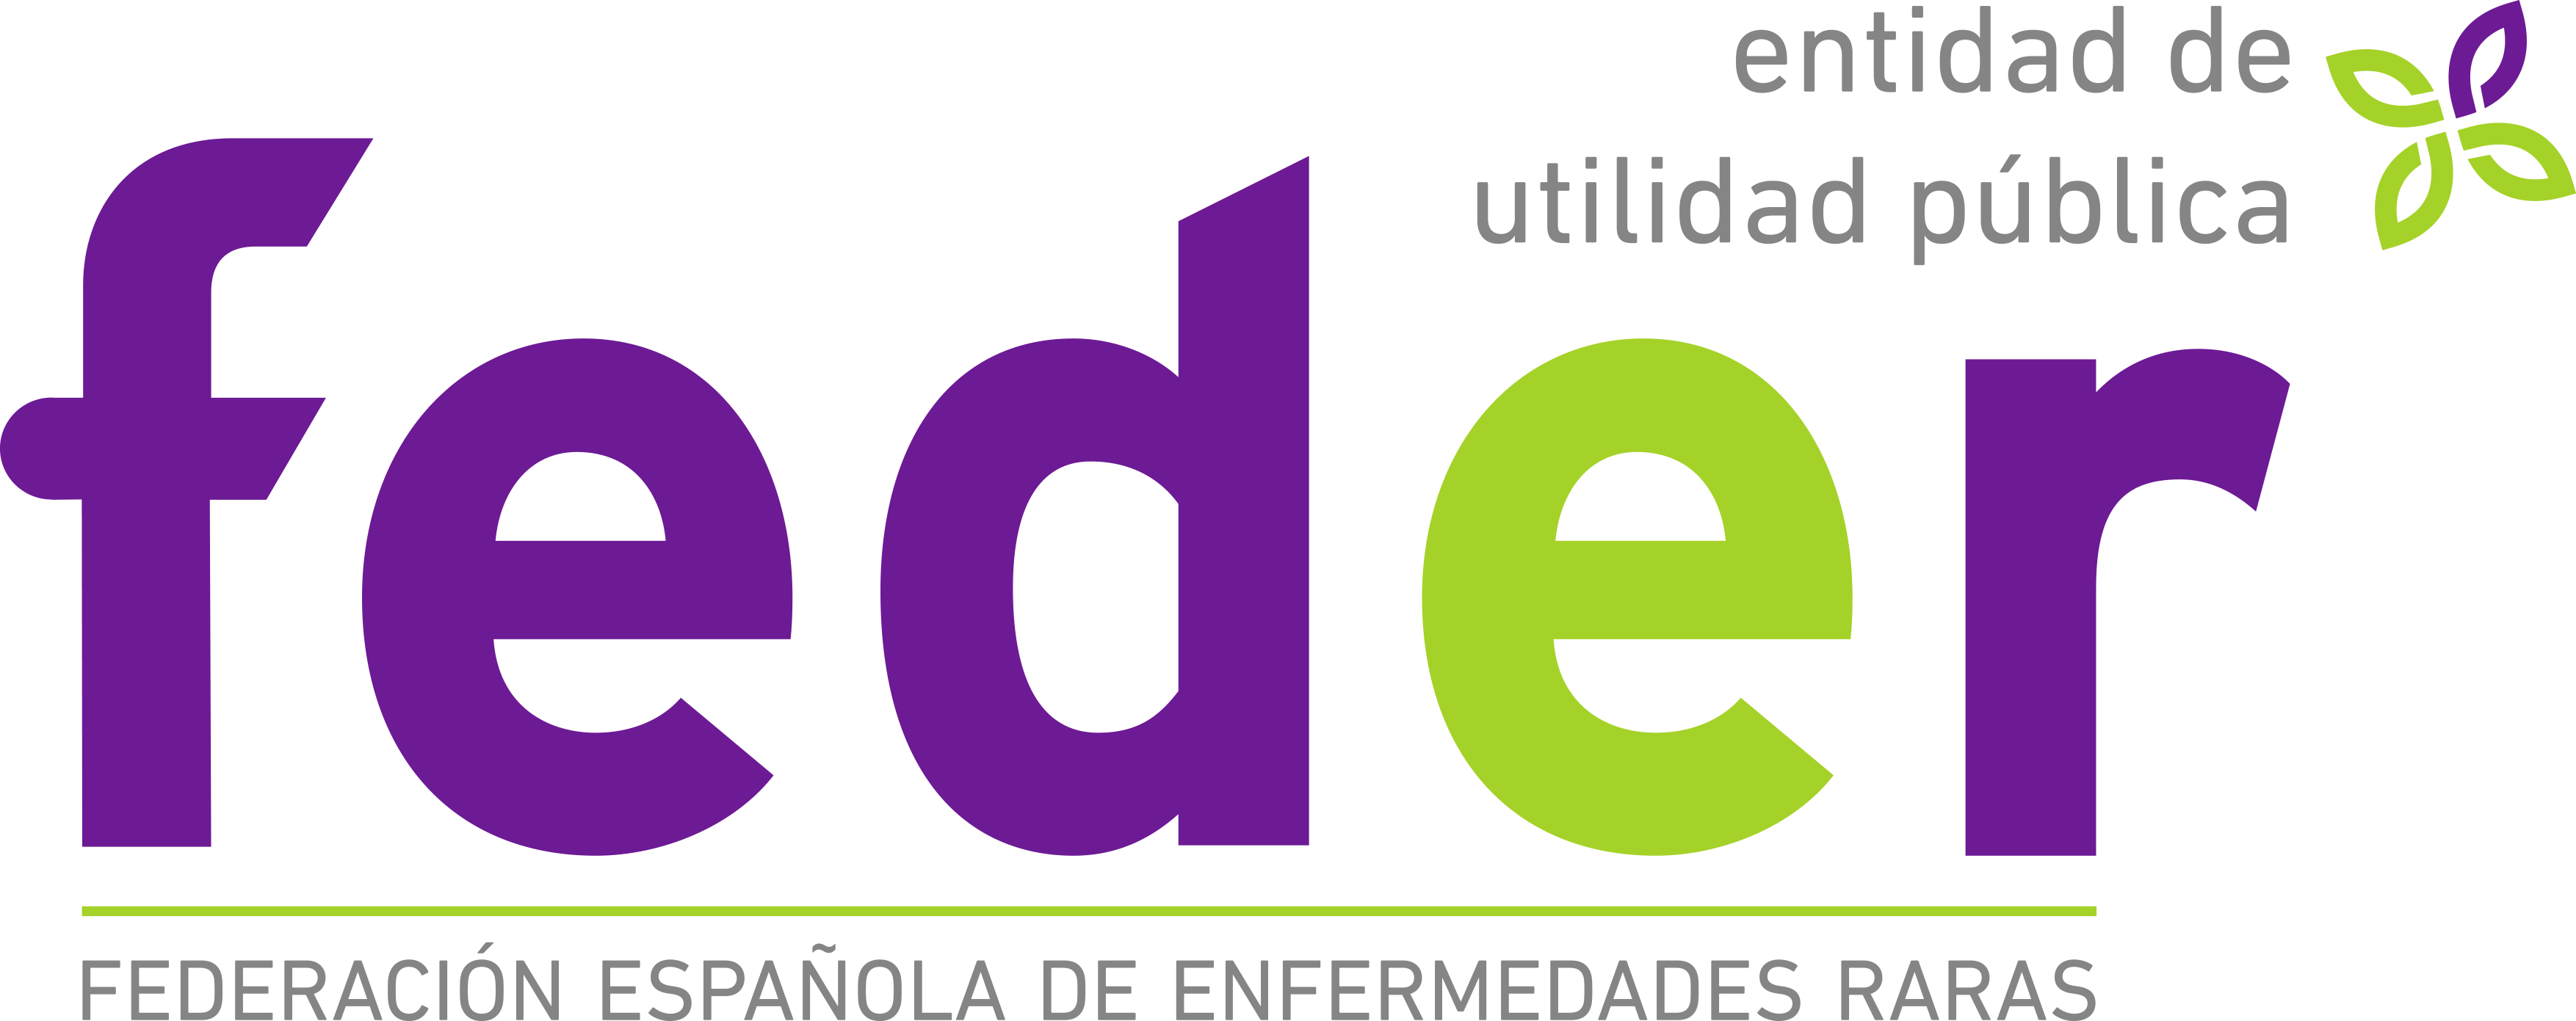 Logotipo Federación Española de Enfermedades Raras.